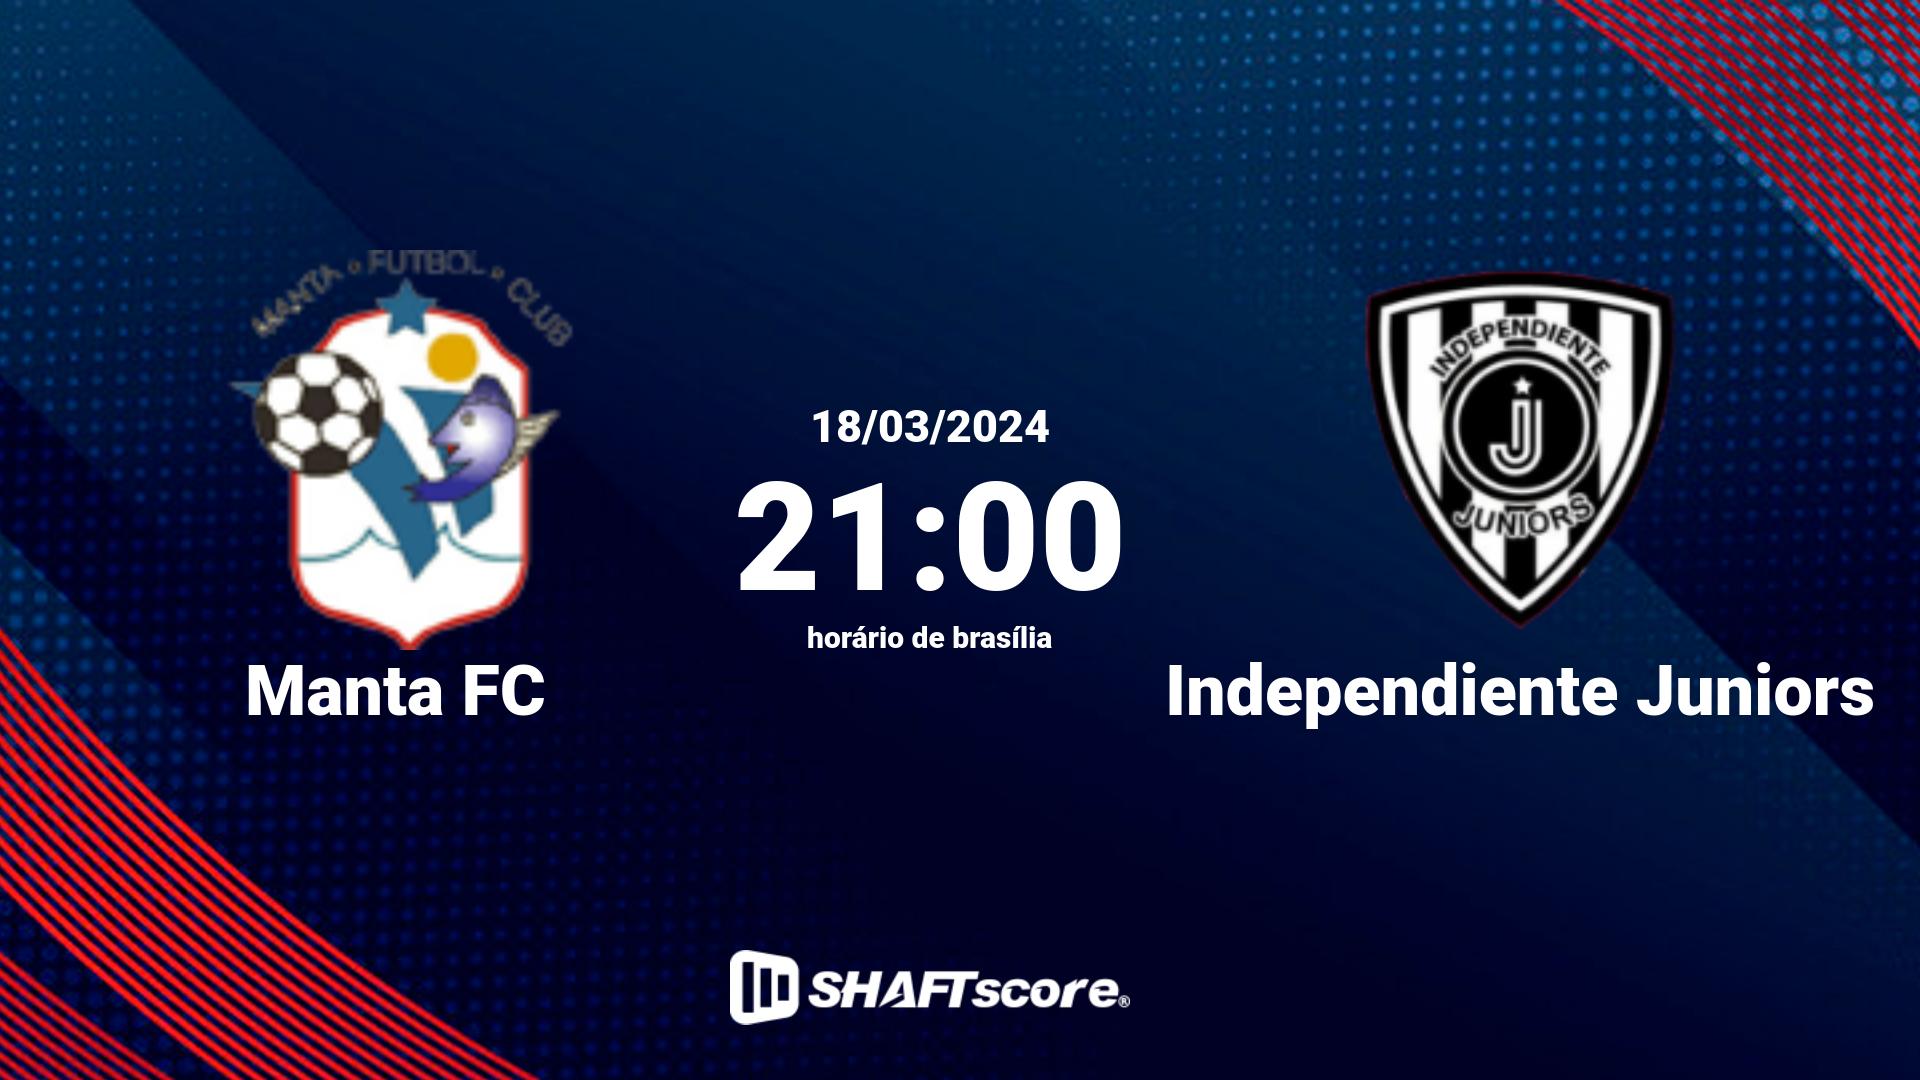 Estatísticas do jogo Manta FC vs Independiente Juniors 18.03 21:00